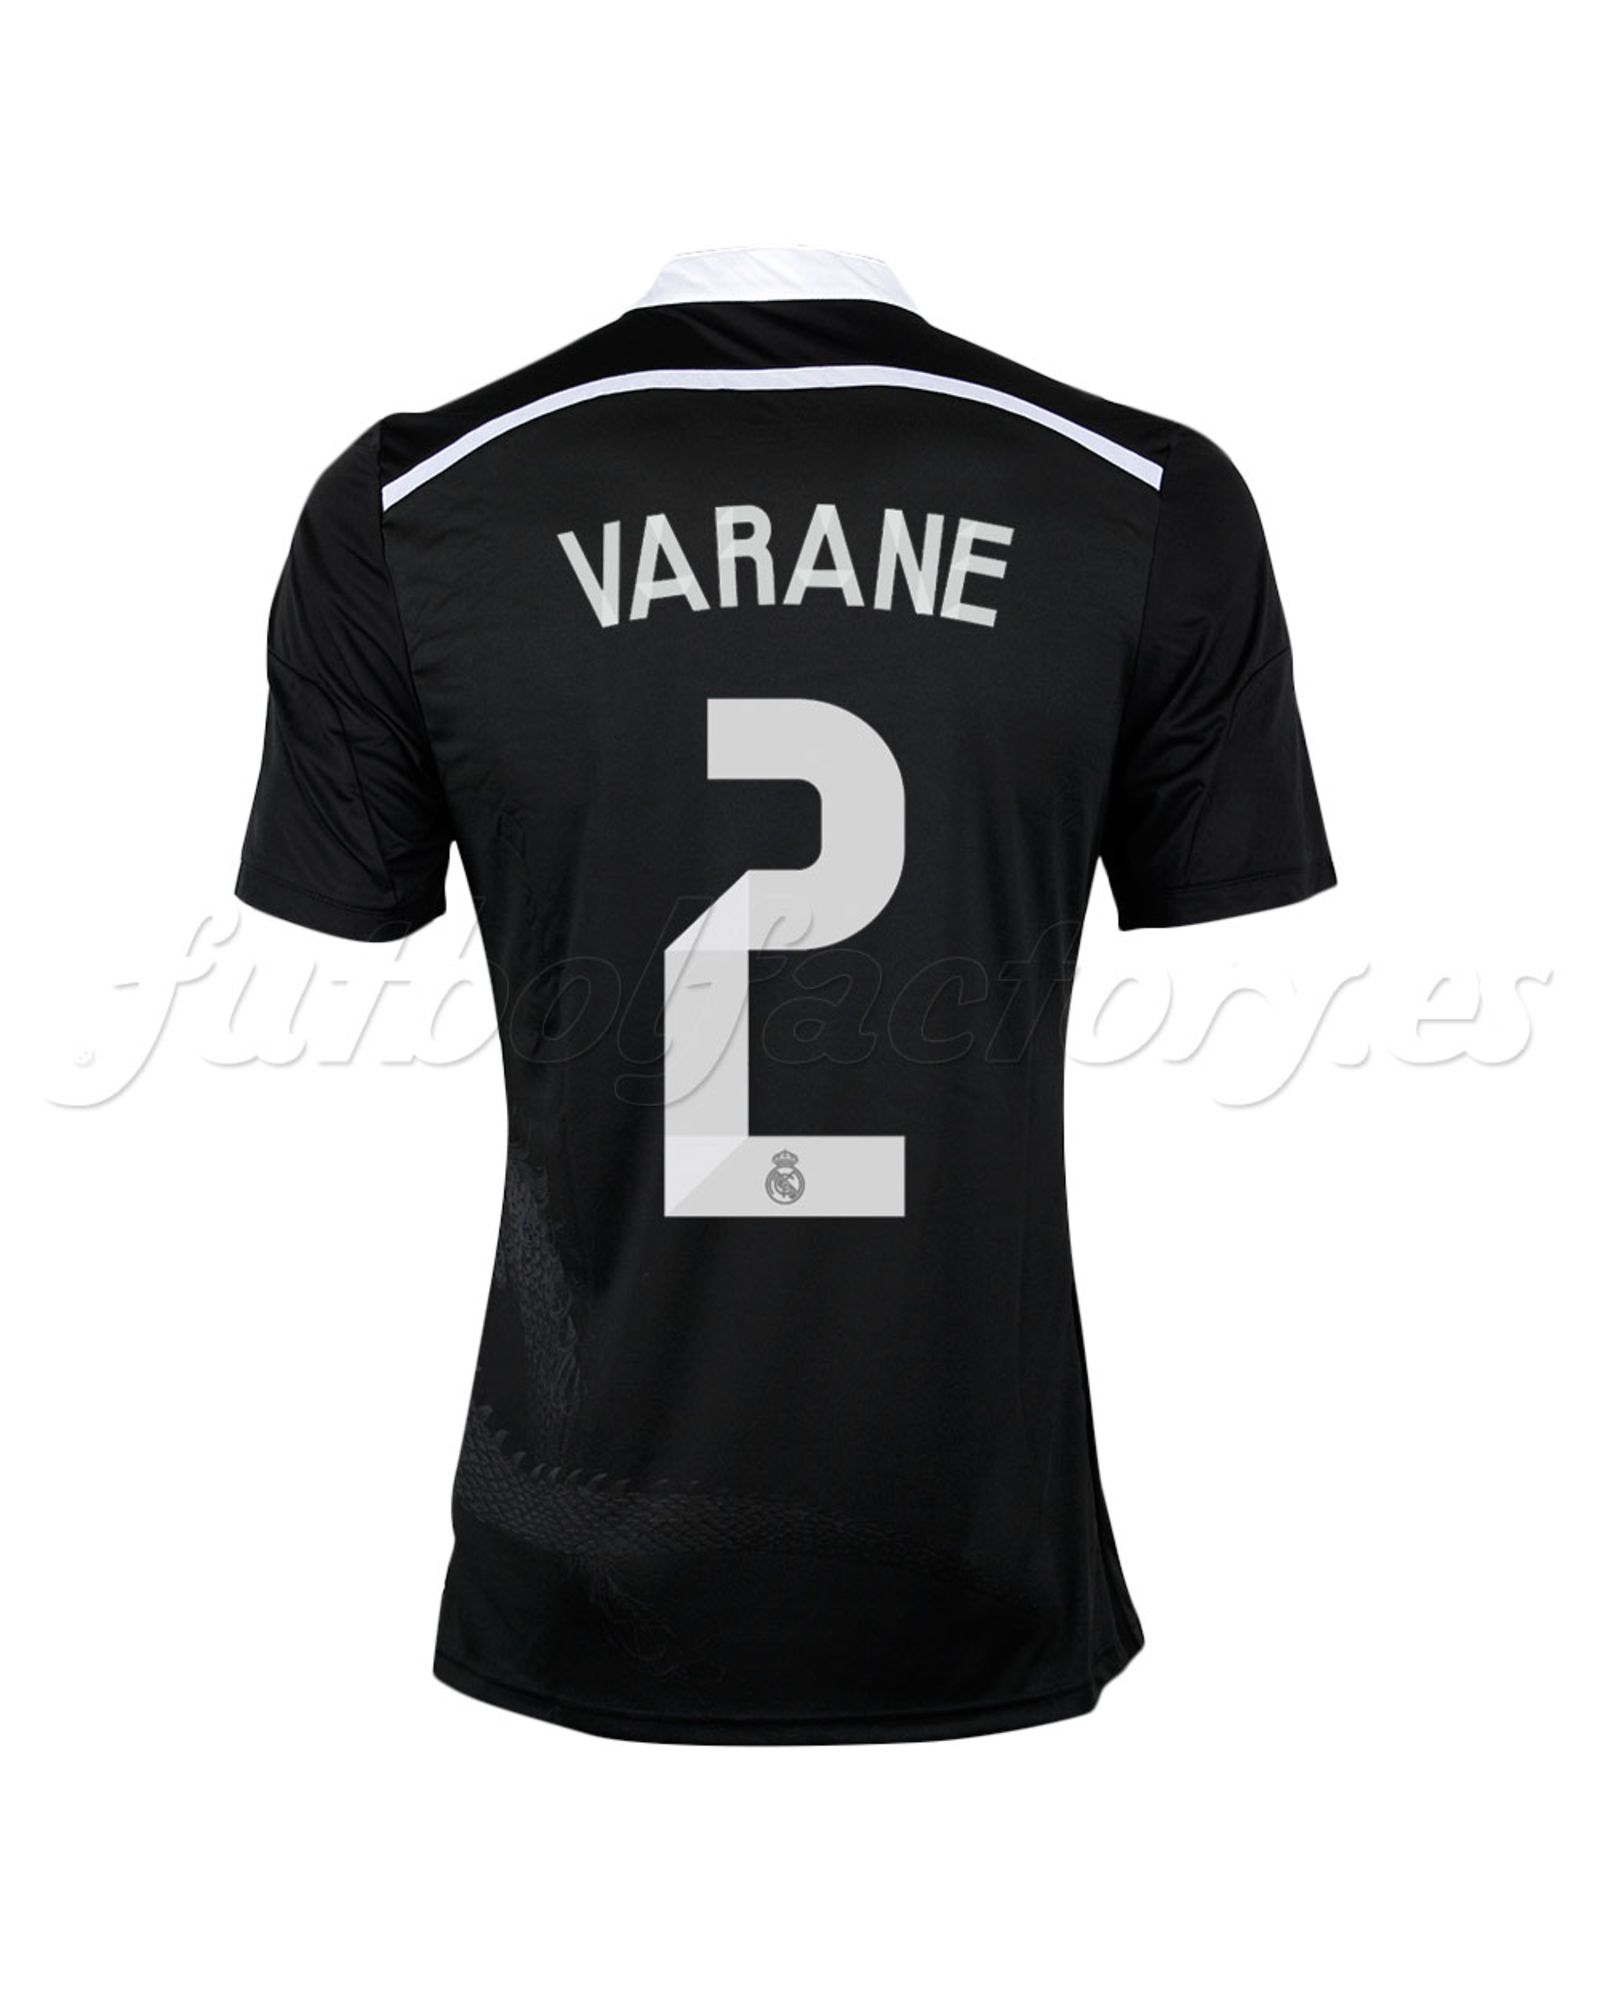 Camiseta Real Madrid 3ª Varane Adizero 2014/2015 Negro - Fútbol Factory